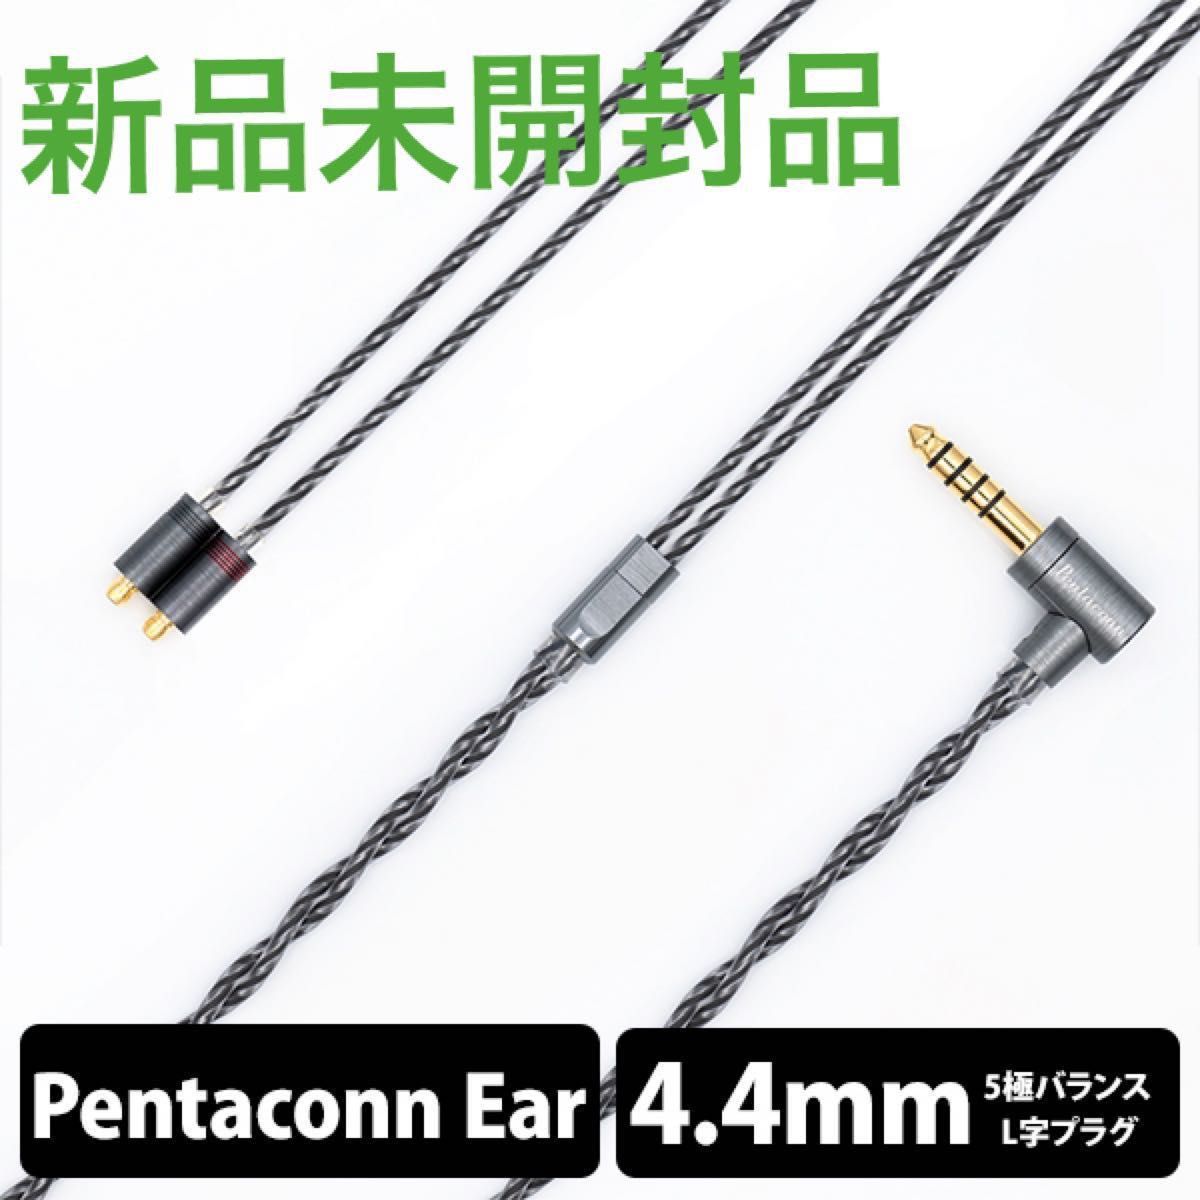 名作 日本ディックス OFC8芯 Pentaconn Ear-4.4mm catalogo.tvs.com.bo